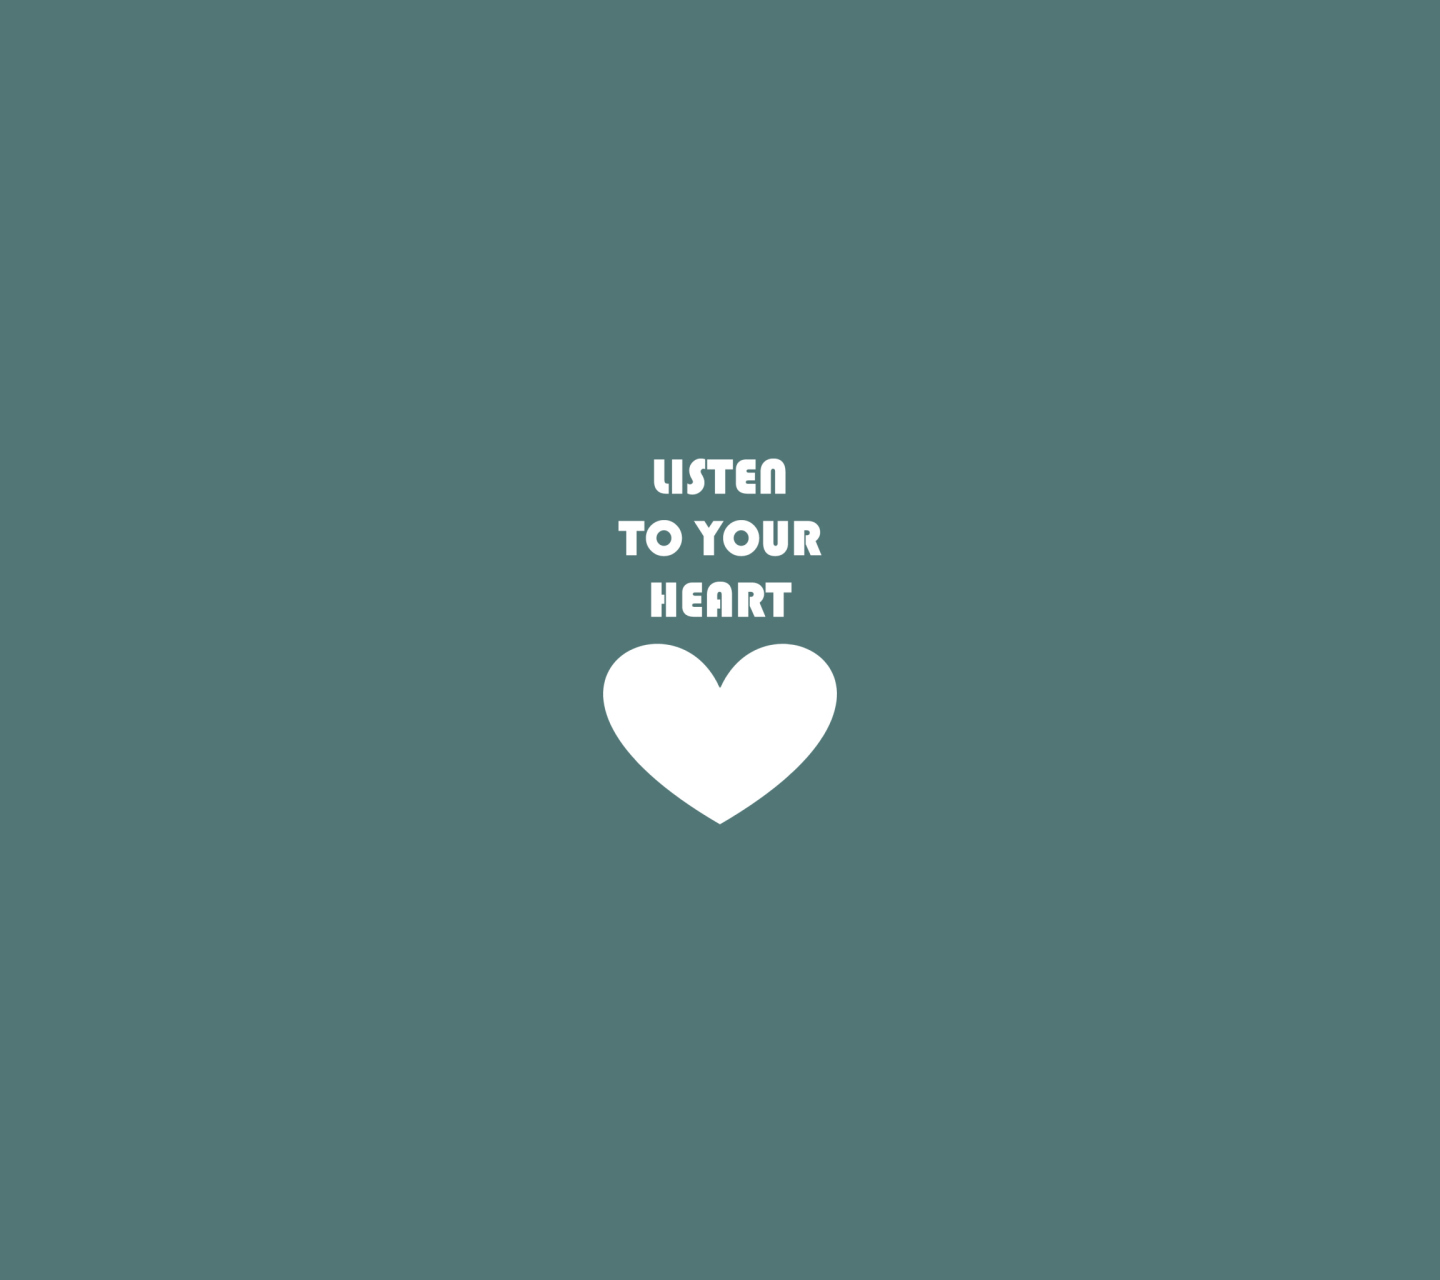 Das Listen To Your Heart Wallpaper 1440x1280